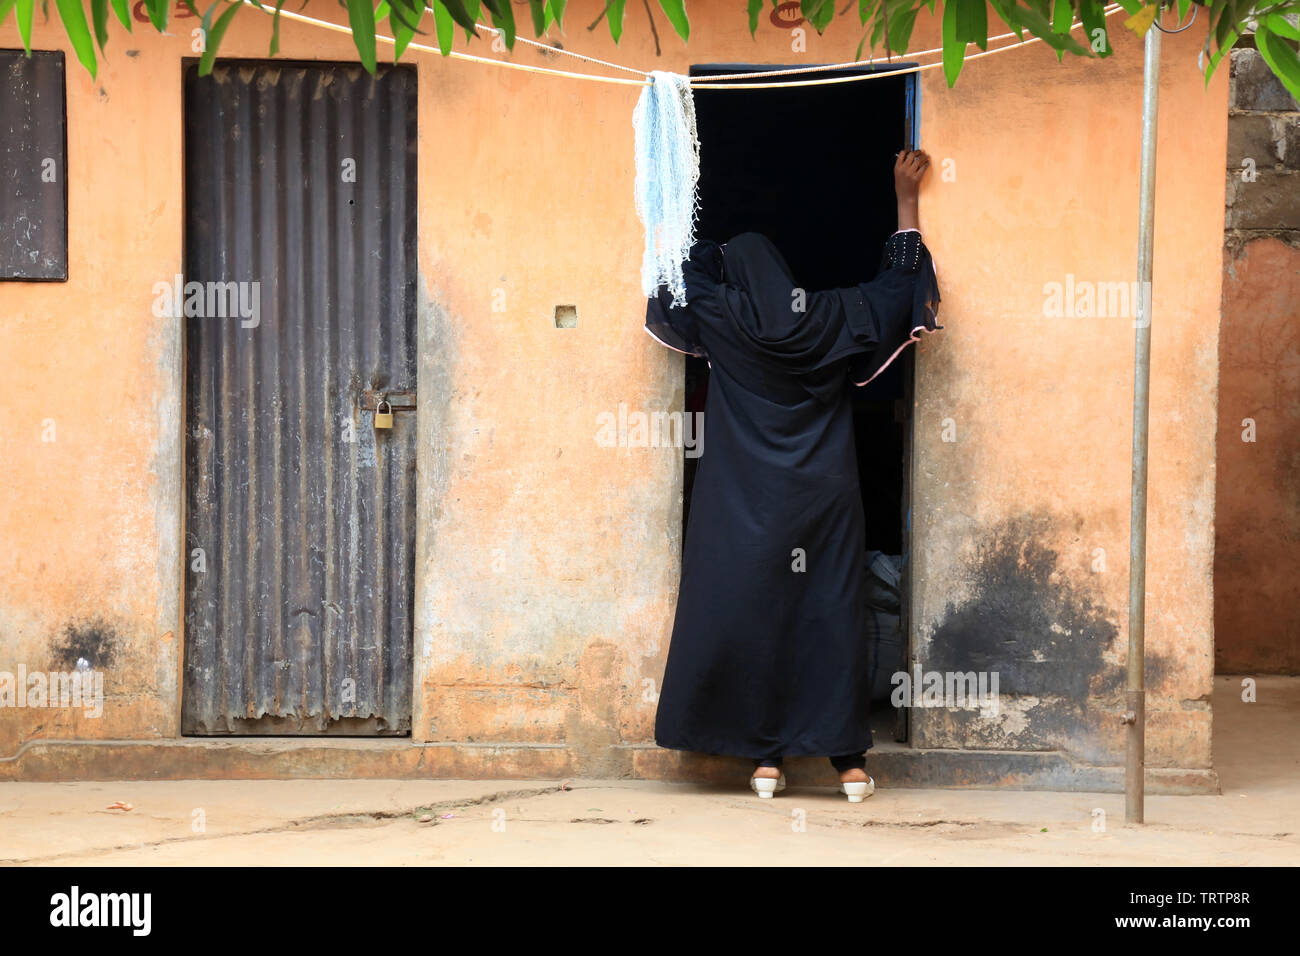 Musulmane discutant sur le perron d'une habitation. Lomé. Togo. Afrique de l'Ouest. Stockfoto